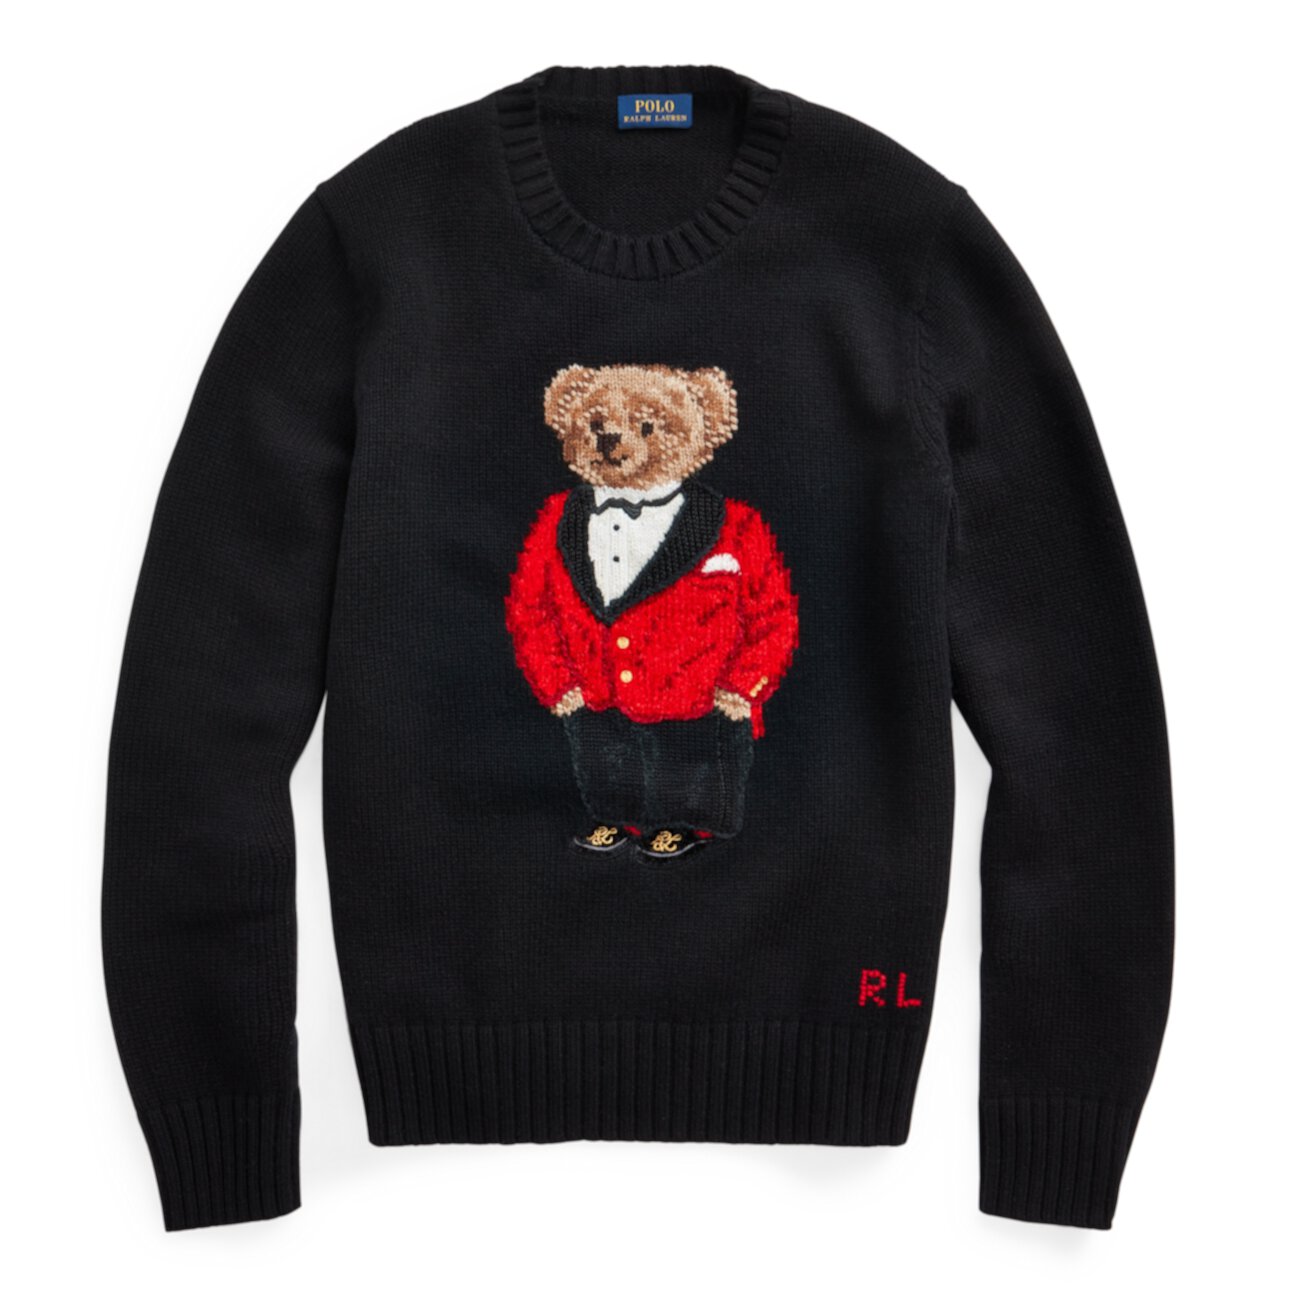 Lunar New Year Polo Bear Sweater Ralph Lauren